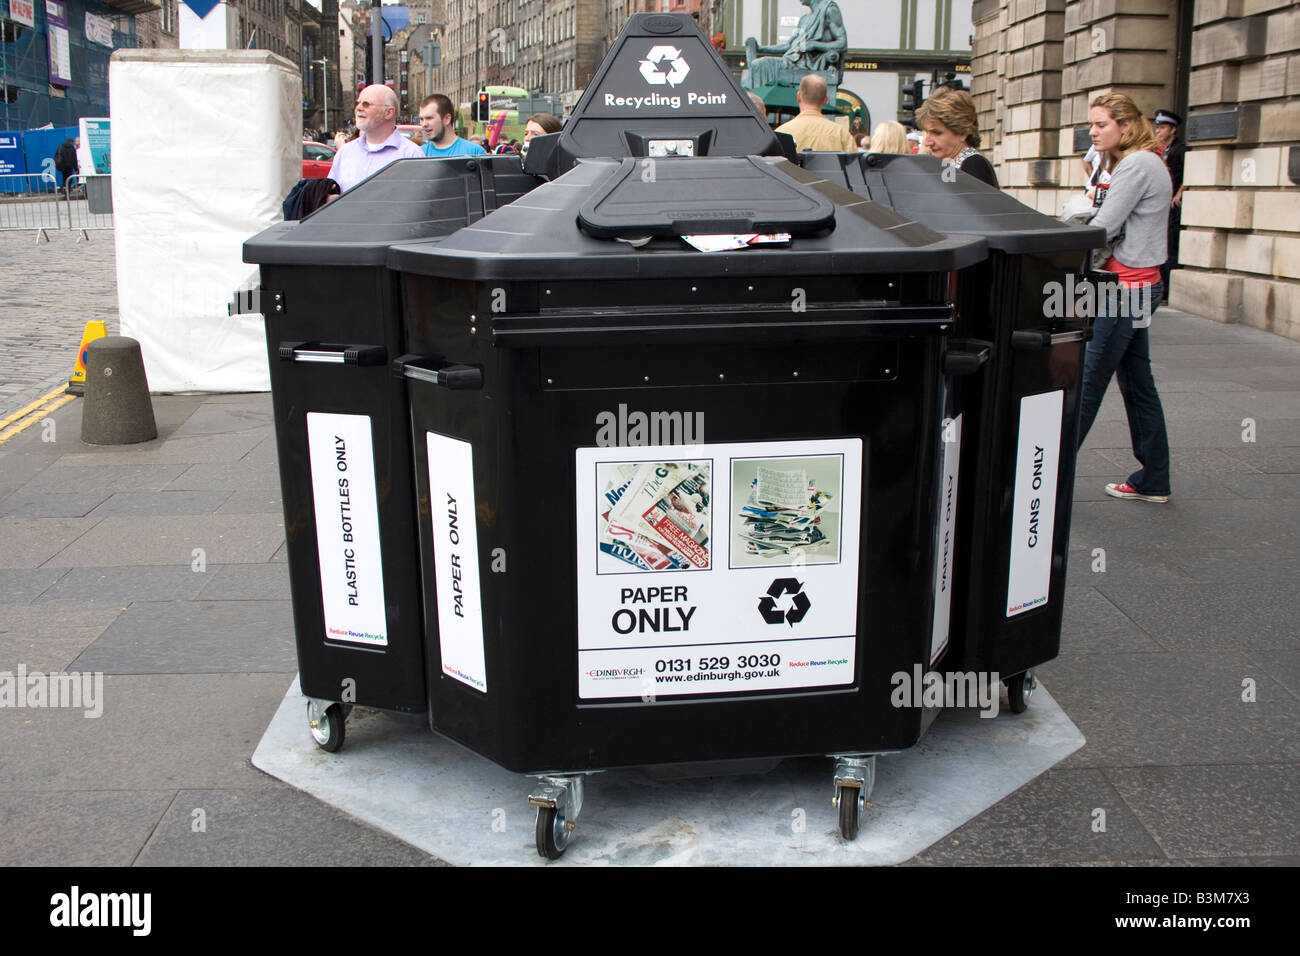 Nouveau point de recyclage à Edimbourg Ecosse UK Banque D'Images